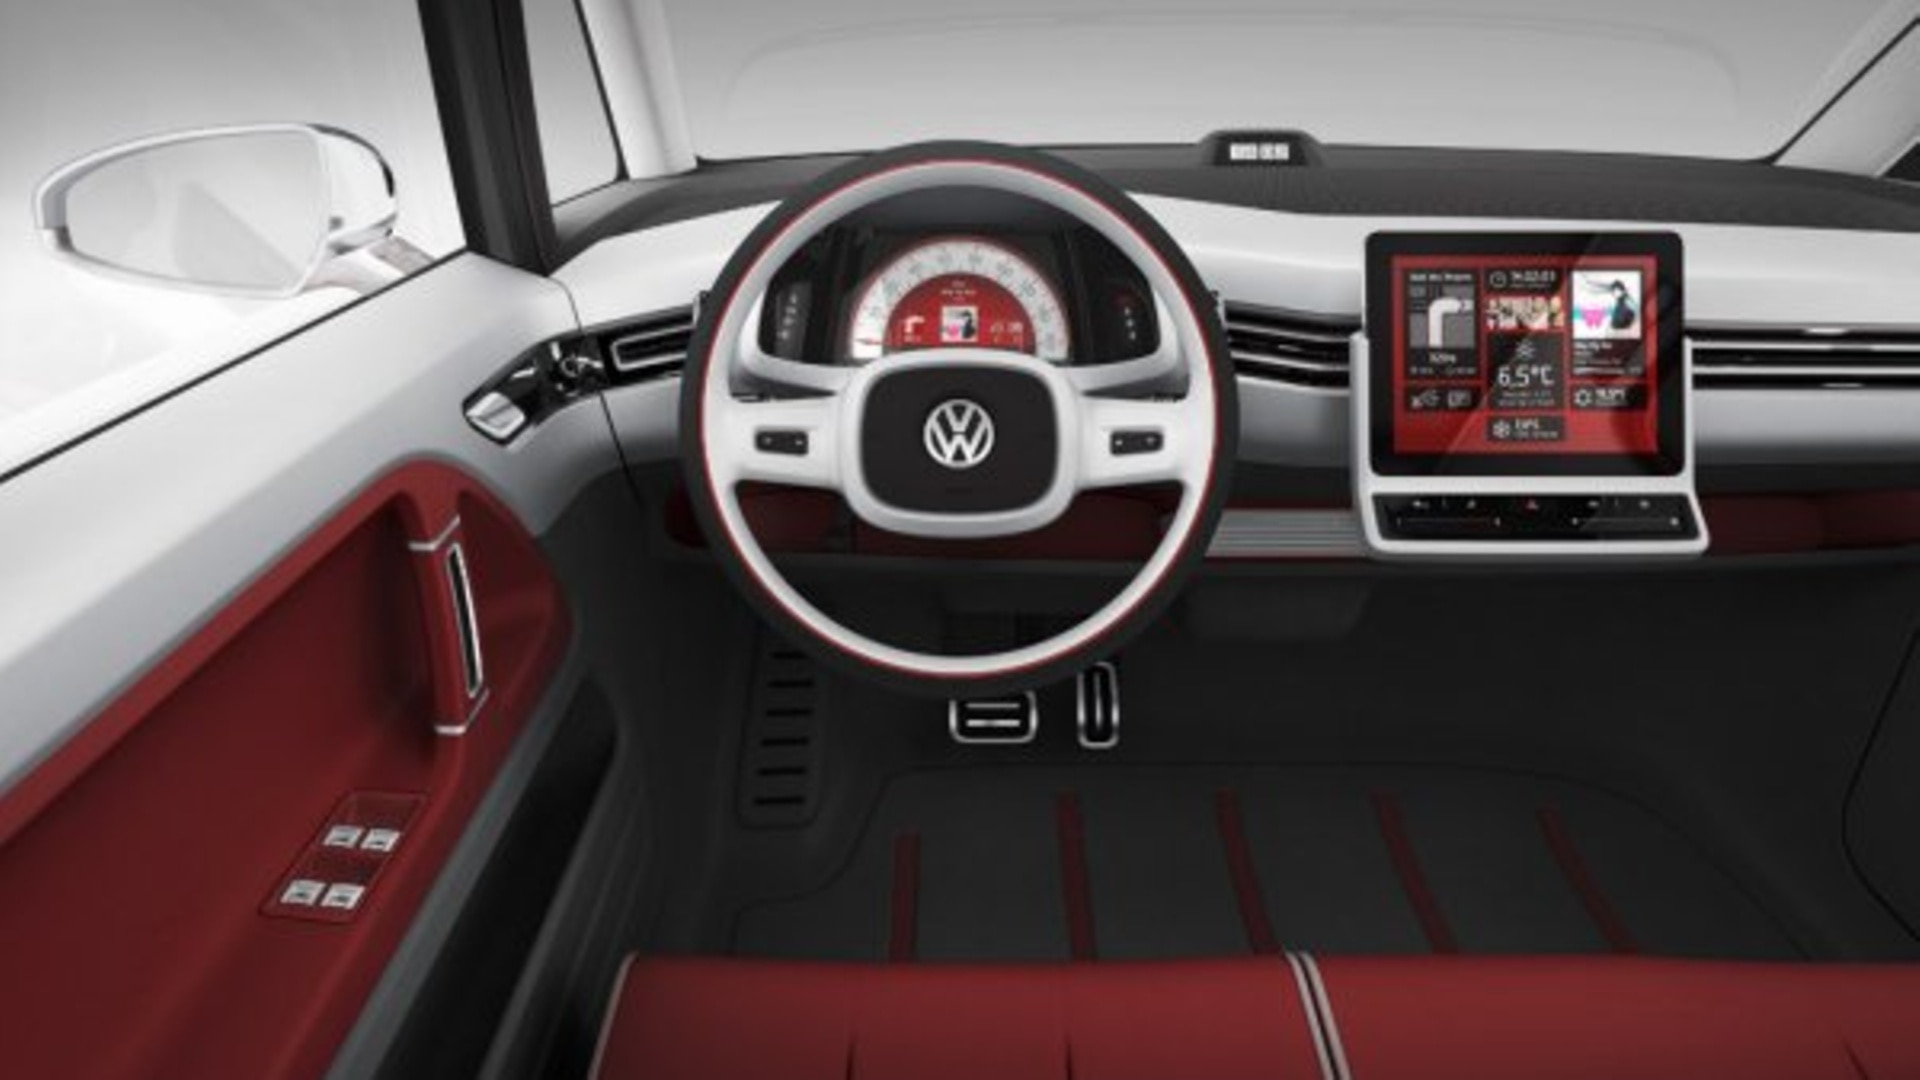 2011 Volkswagen Bulli Wallpapers